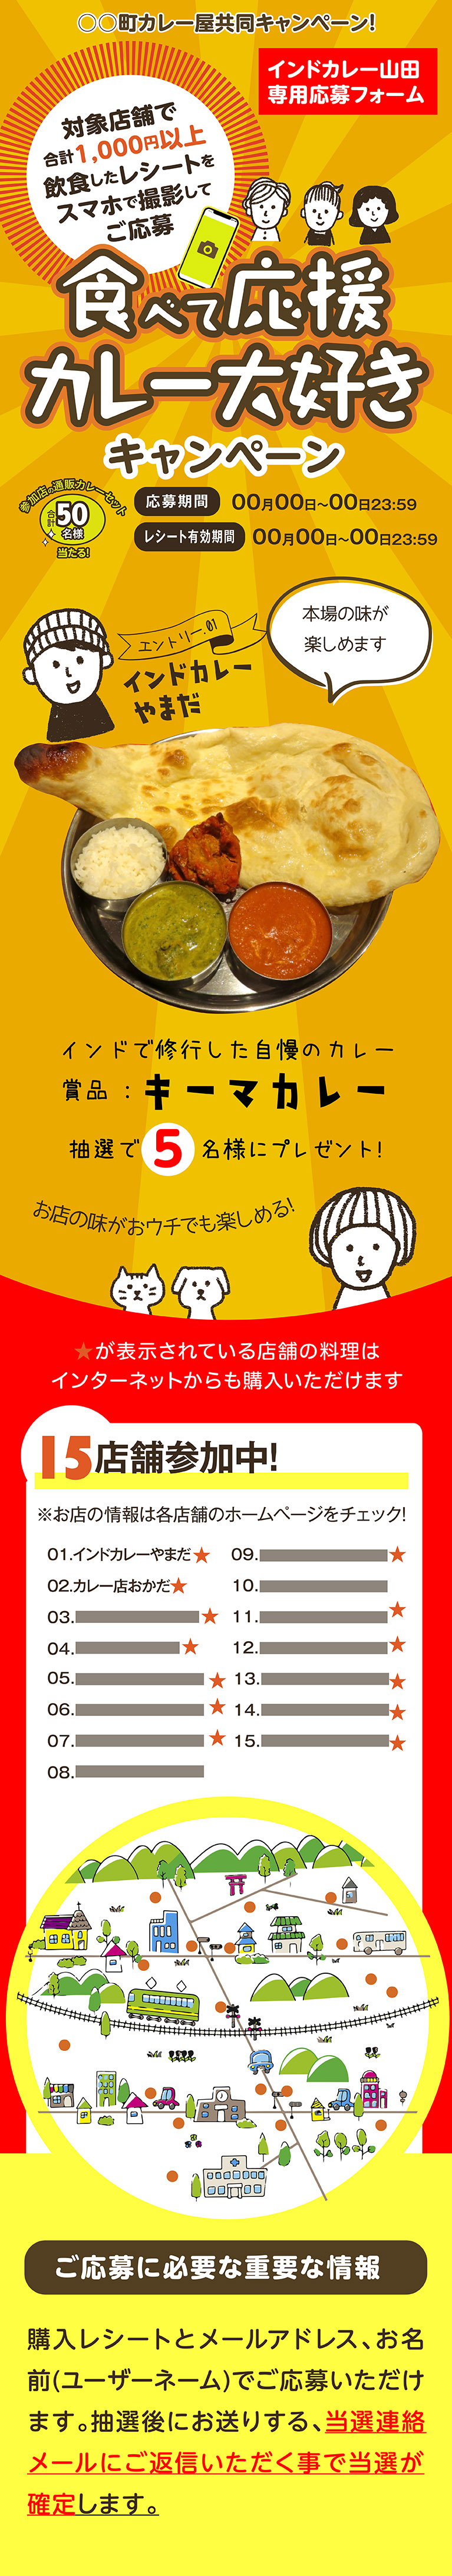 食べて応援カレー大好き(仮)○○町カレー屋共同キャンペーン!